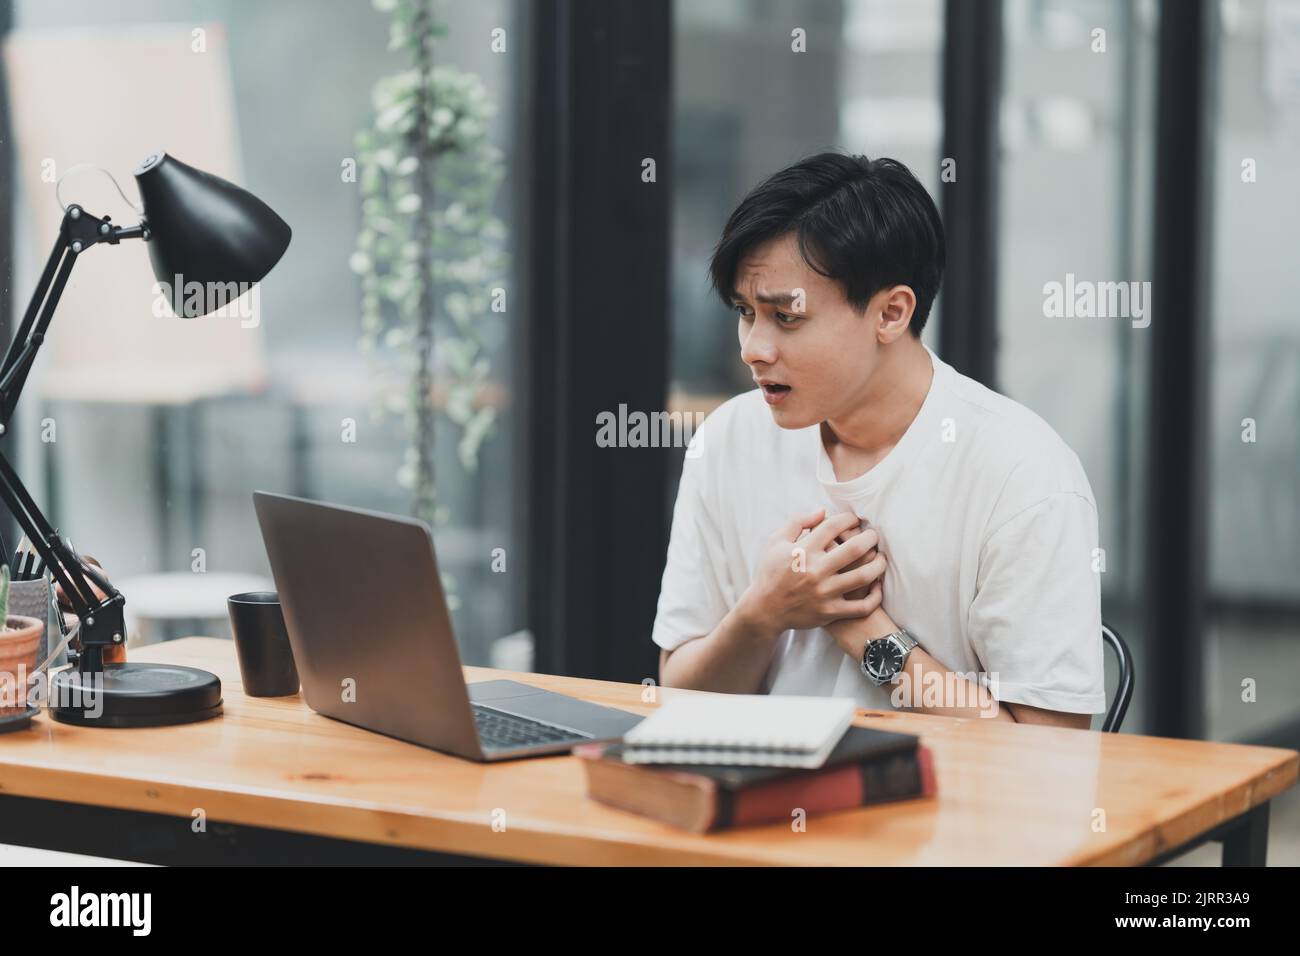 Un homme asiatique utilisant un ordinateur portable choquant alors qu'il a une mauvaise nouvelle Banque D'Images